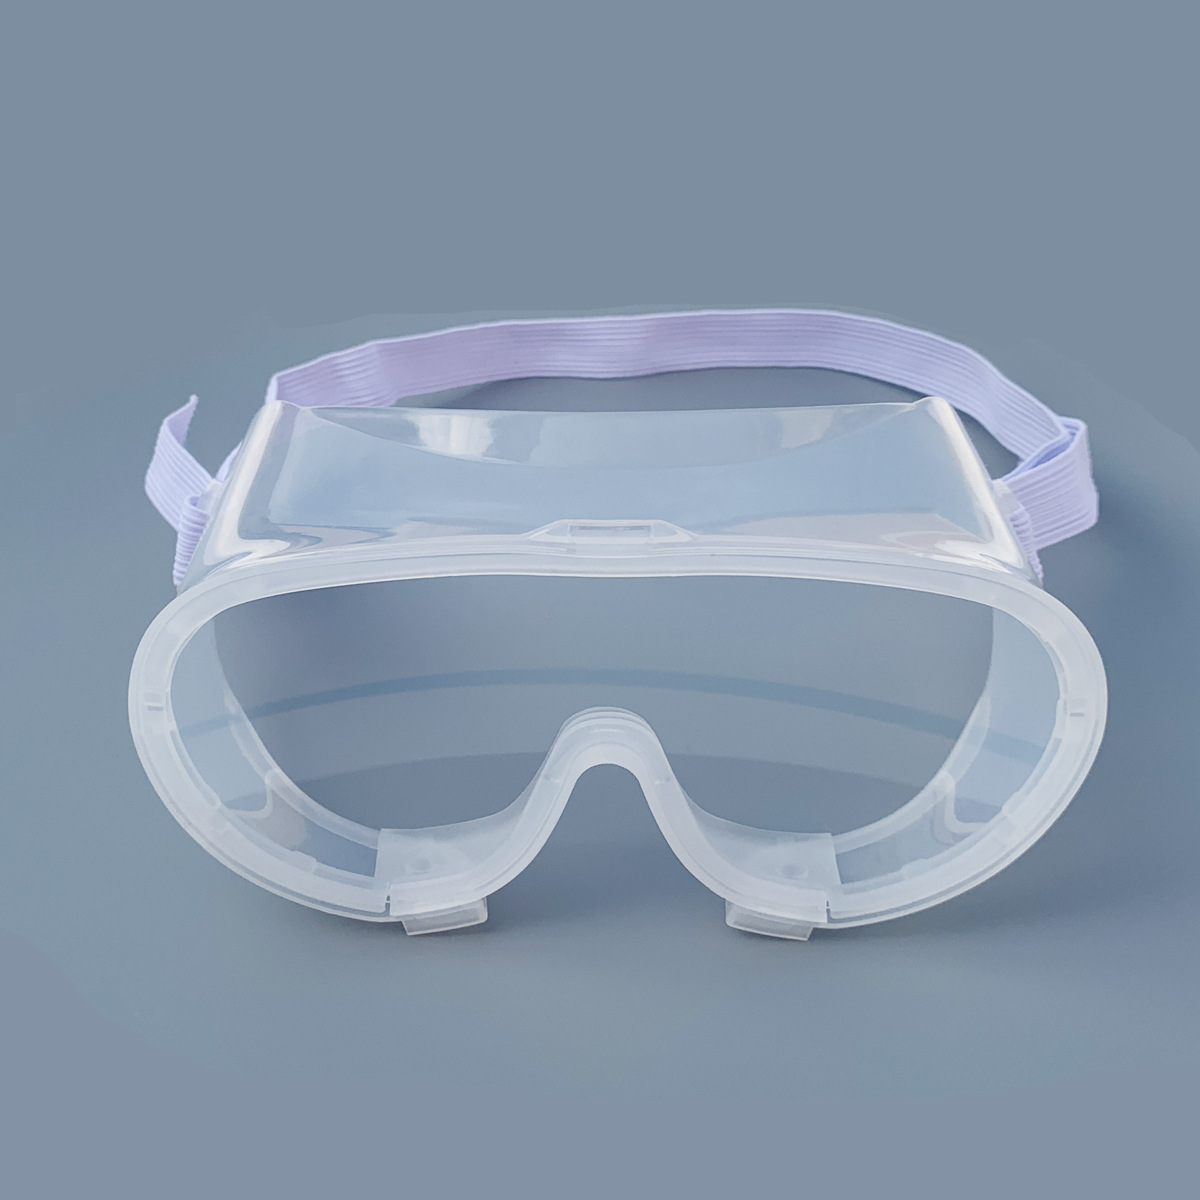 인증 눈 보호 안경 안티 안개 타고 작업 안경 개인 방풍 안전 고글 안경